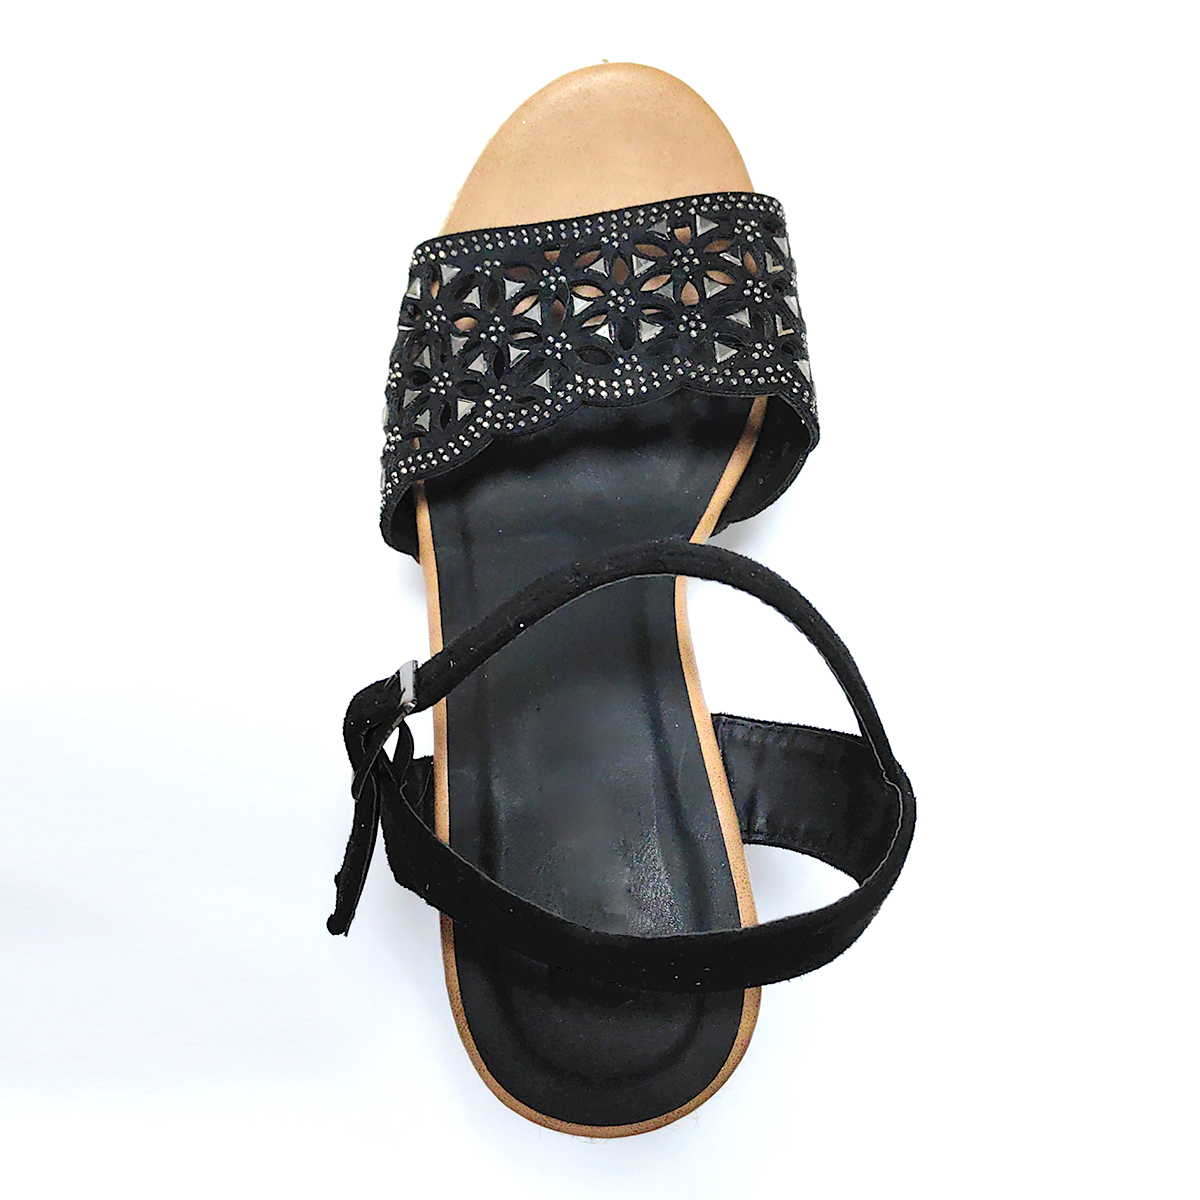 Wedge heeled ethnic sandals